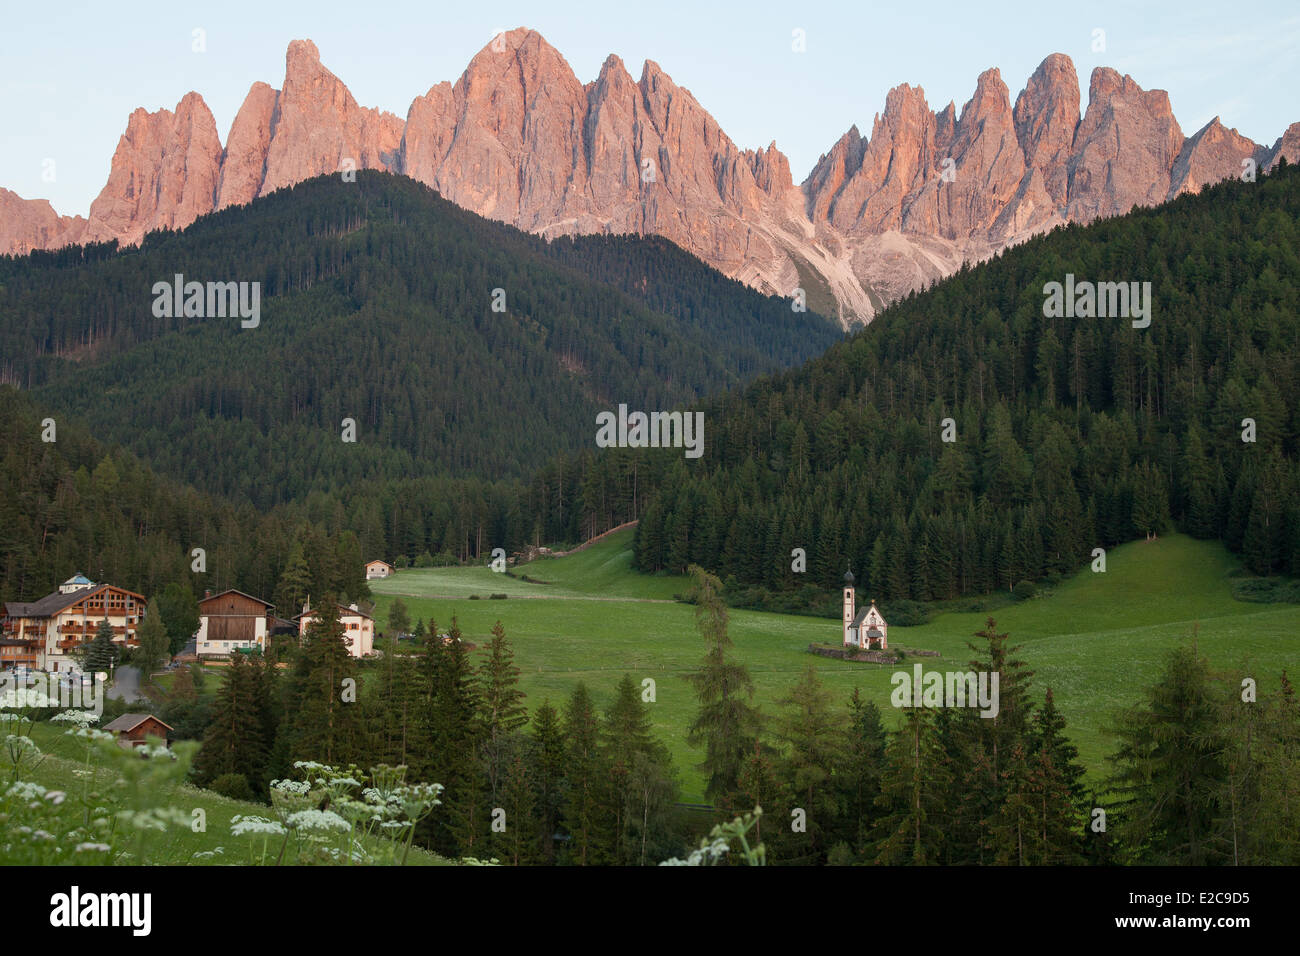 L'Italia, Trentino Alto Adige, Dolomiti massiccio elencati come patrimonio mondiale dall' UNESCO, Funes o Villnoss valley, Saint Johann chiesa Foto Stock